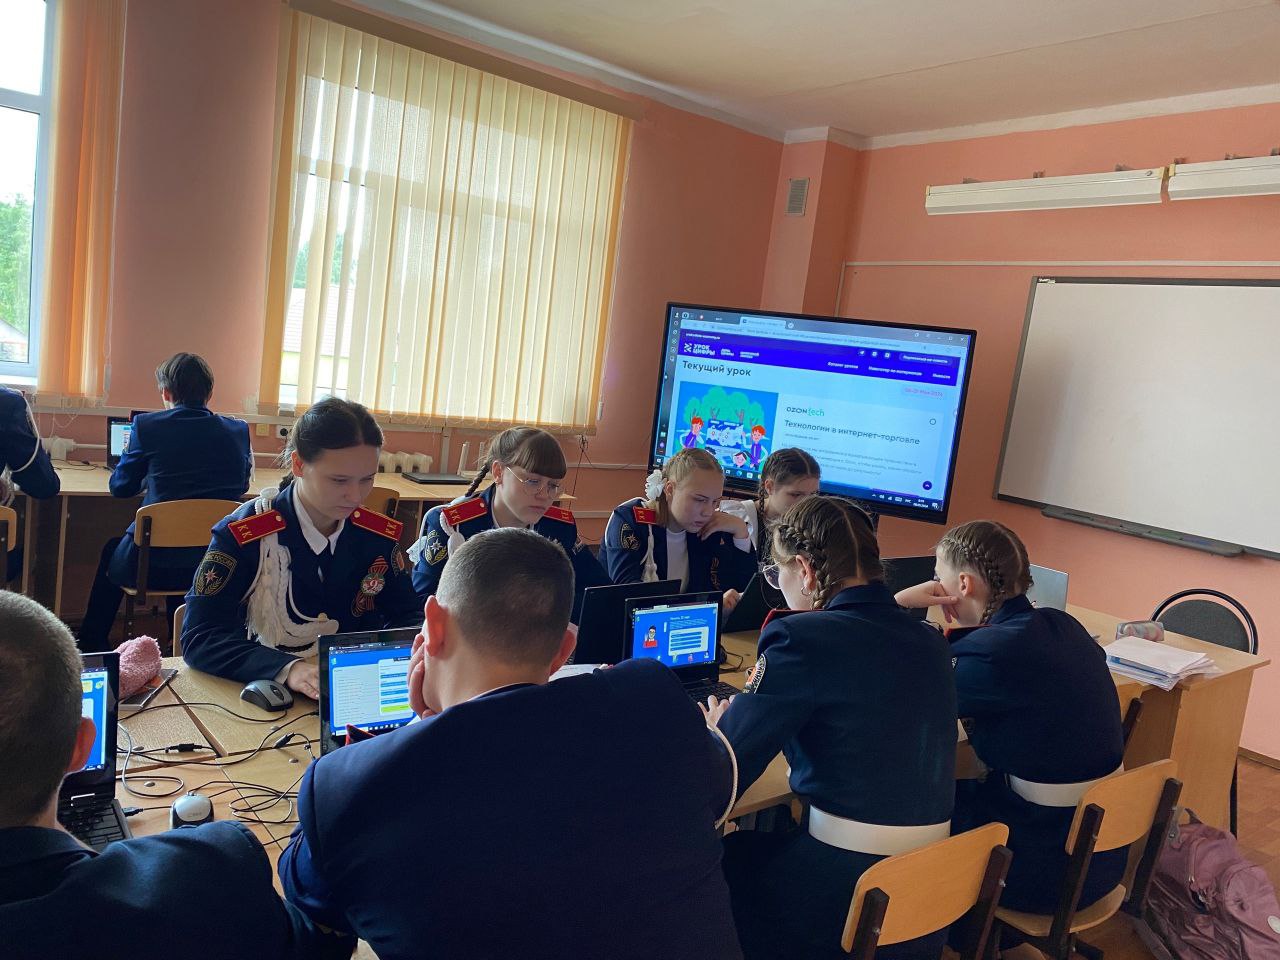 Учащиеся нашей гимназии принимают активное участие во Всероссийском проекте «Урок цифры», тема текущего урока: Технологии в интернет-торговле.